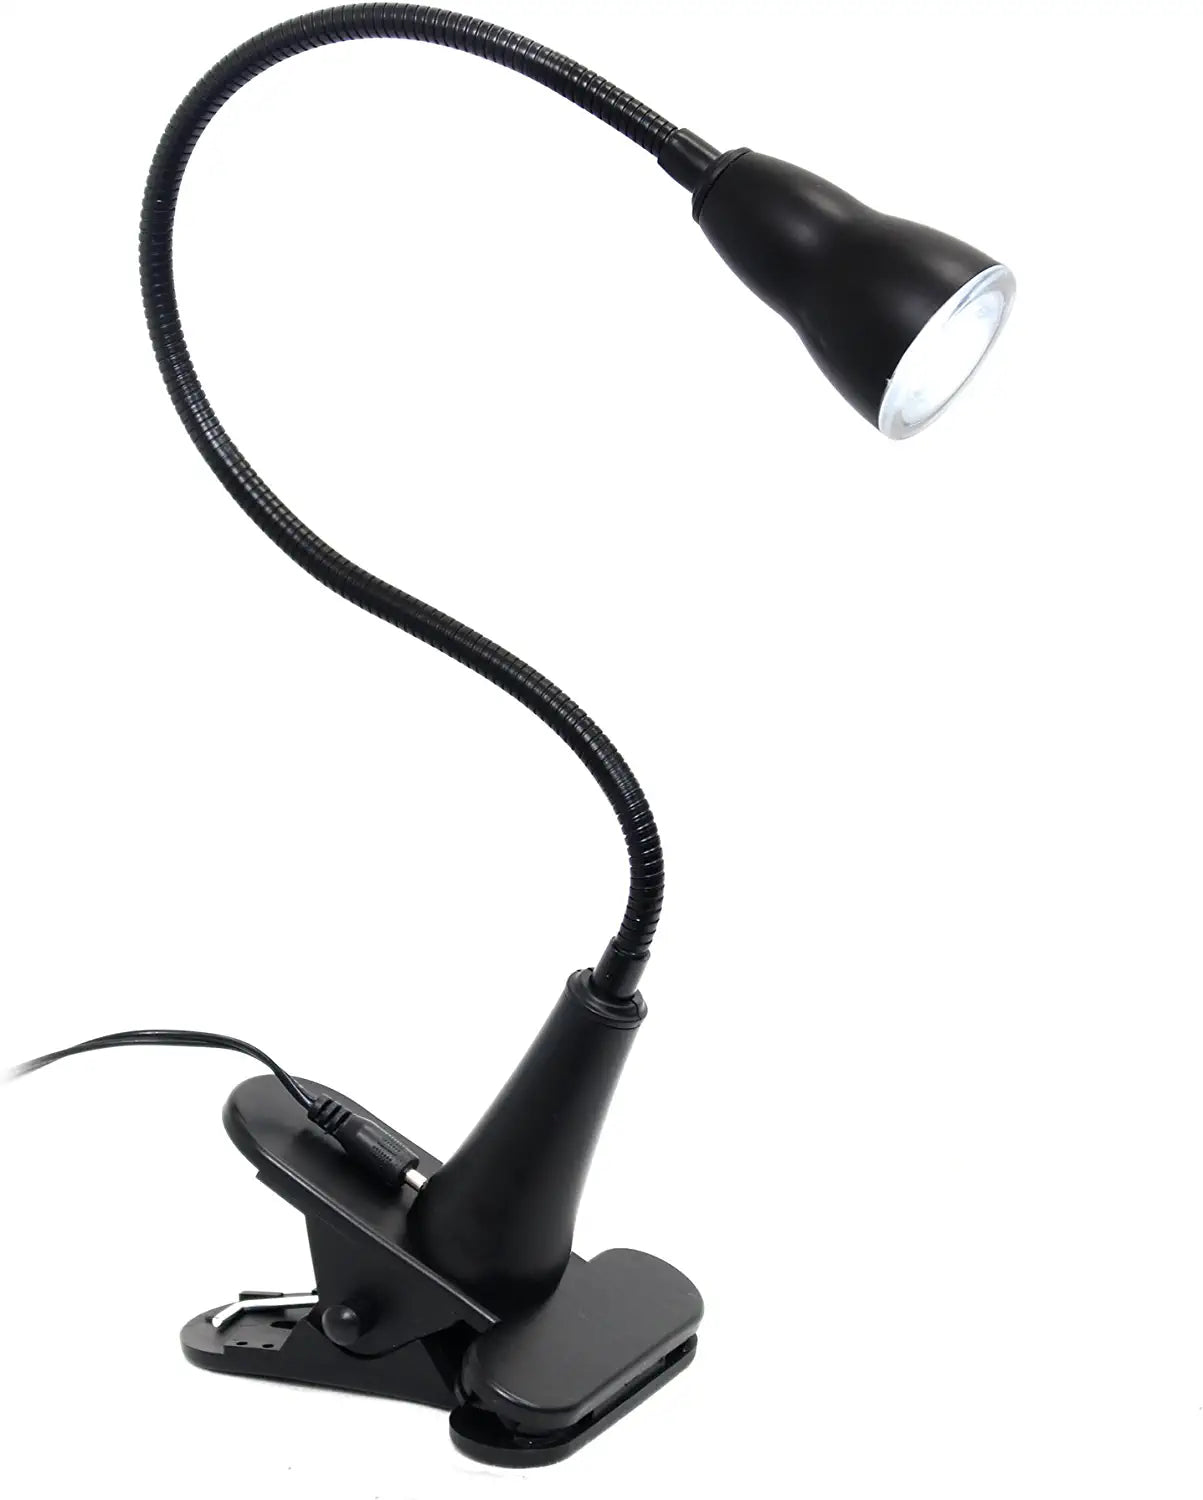 Simple Designs LD2015-BLK Basic 1W LED Gooseneck Flexible Clip Light Desk Lamp, Black Visit the Simple Designs Store